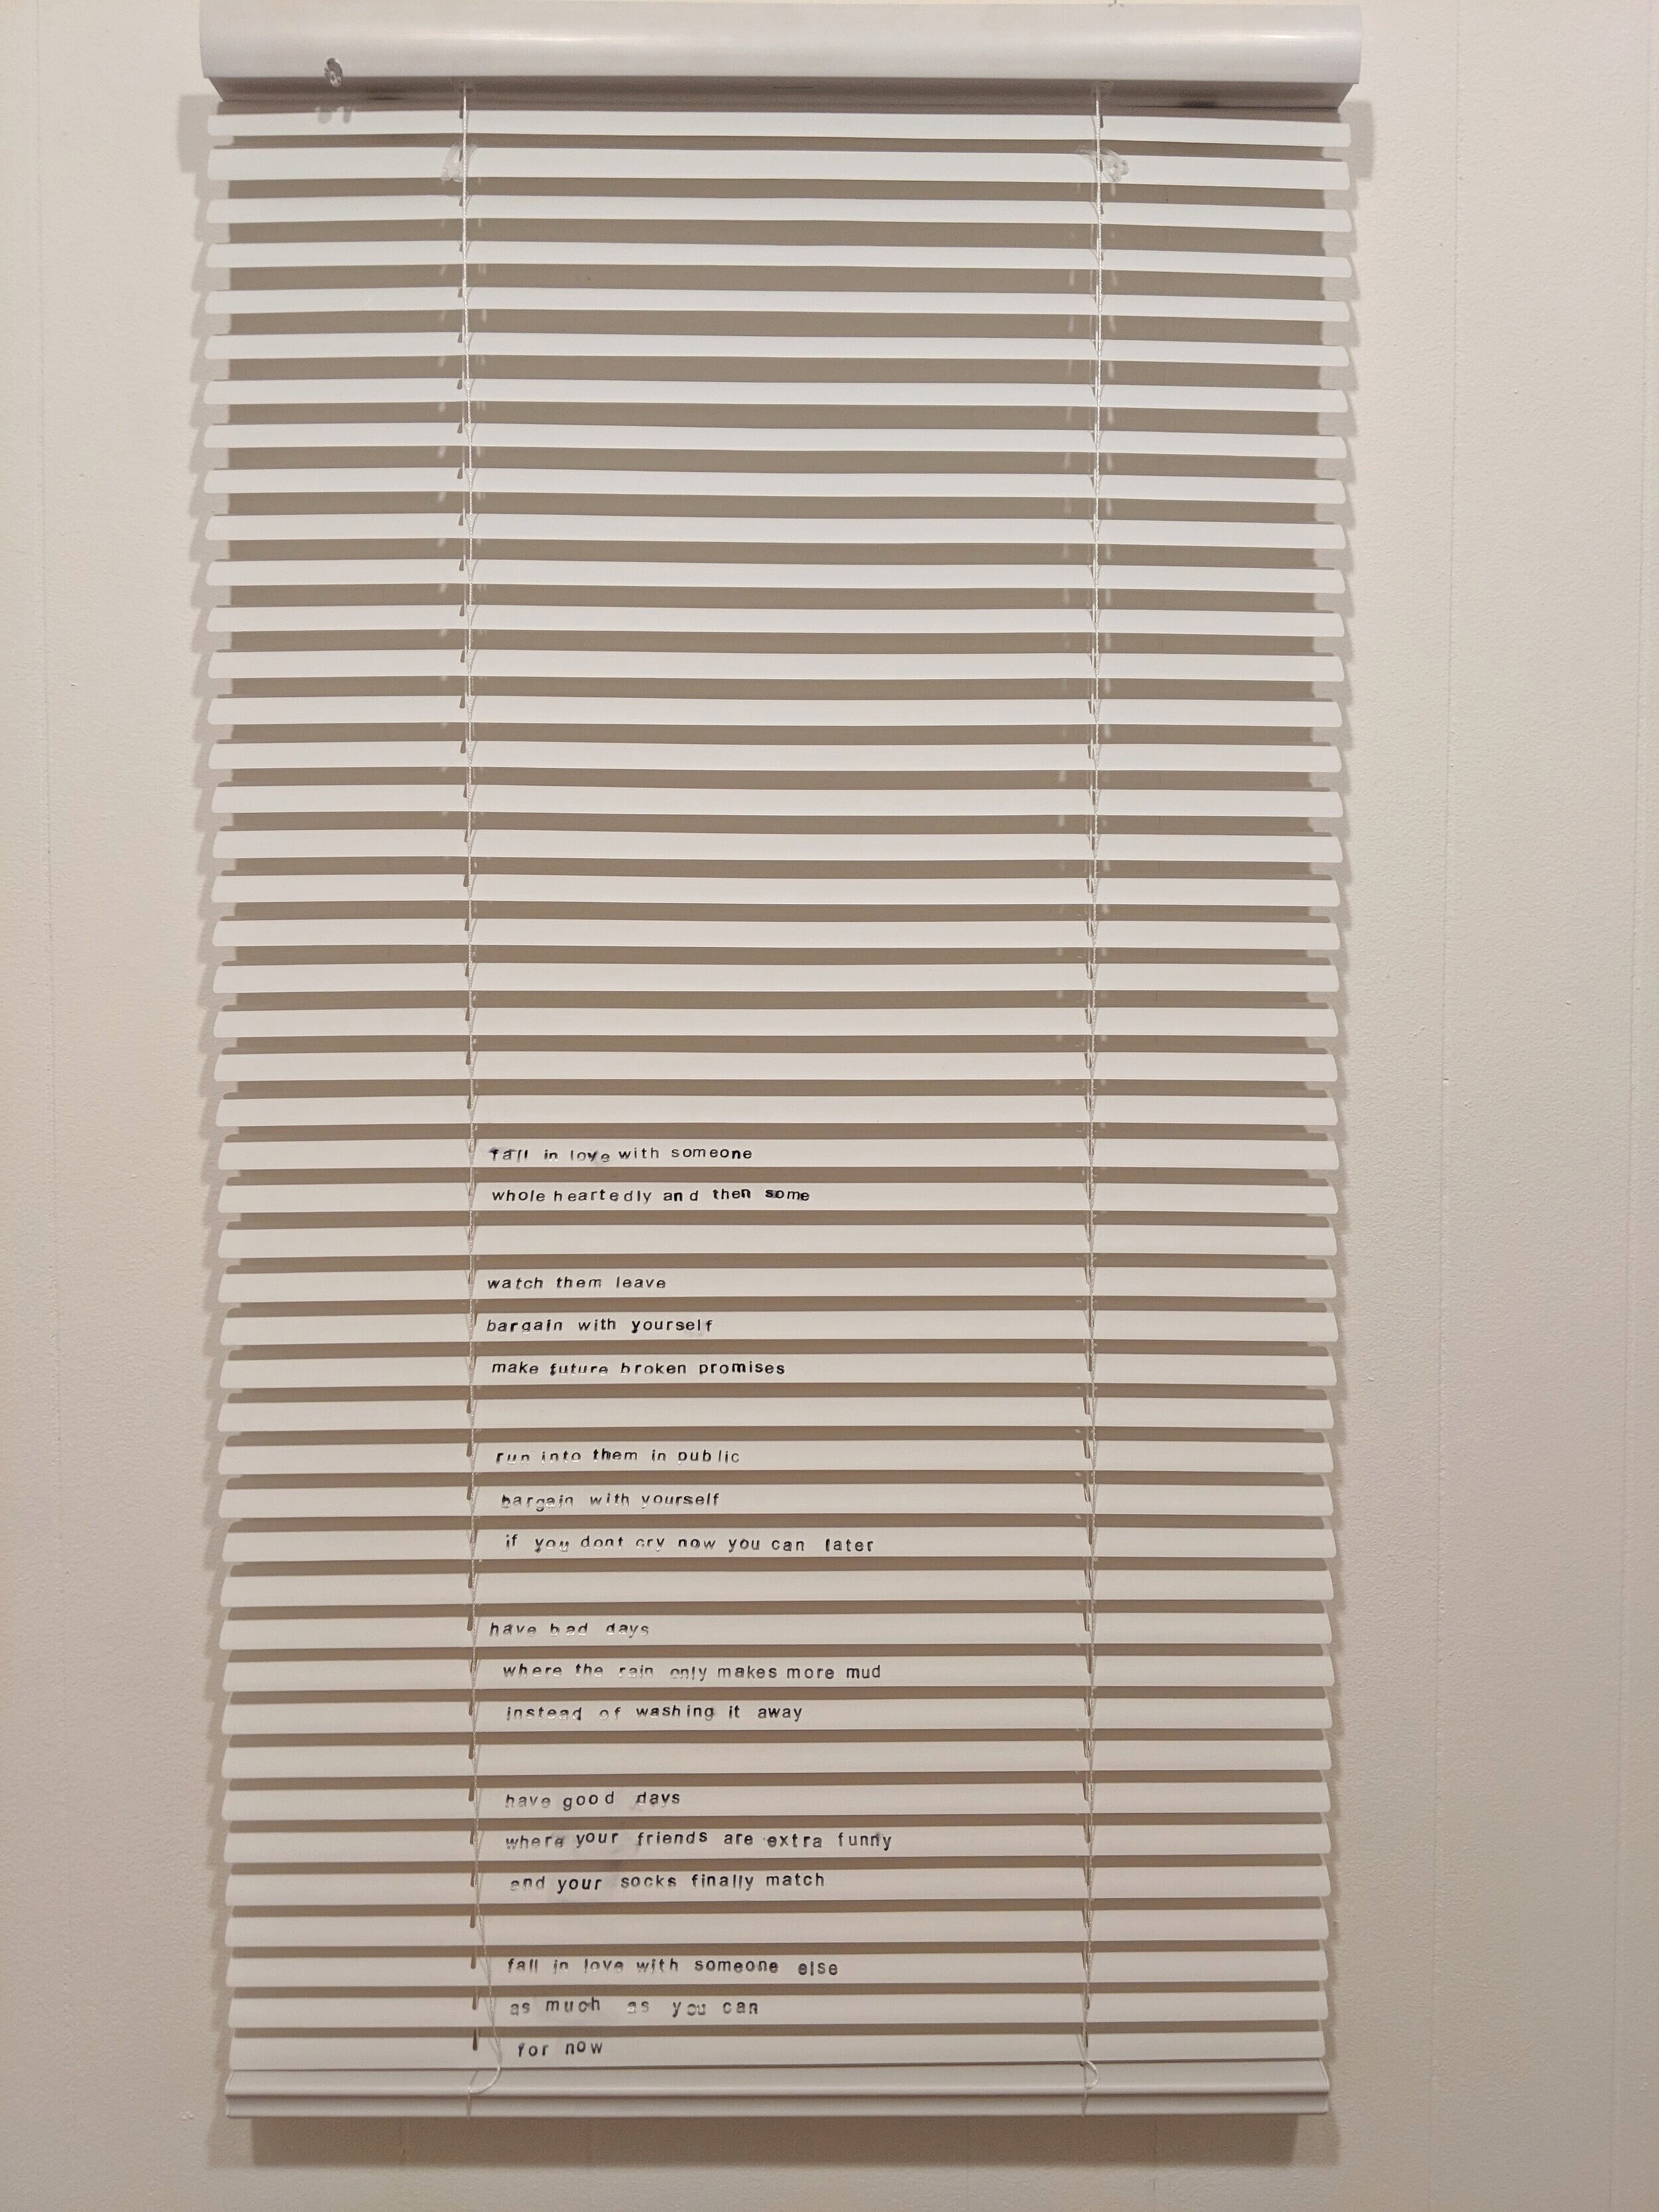   To-do list,   vinyl mini blinds, 2019 